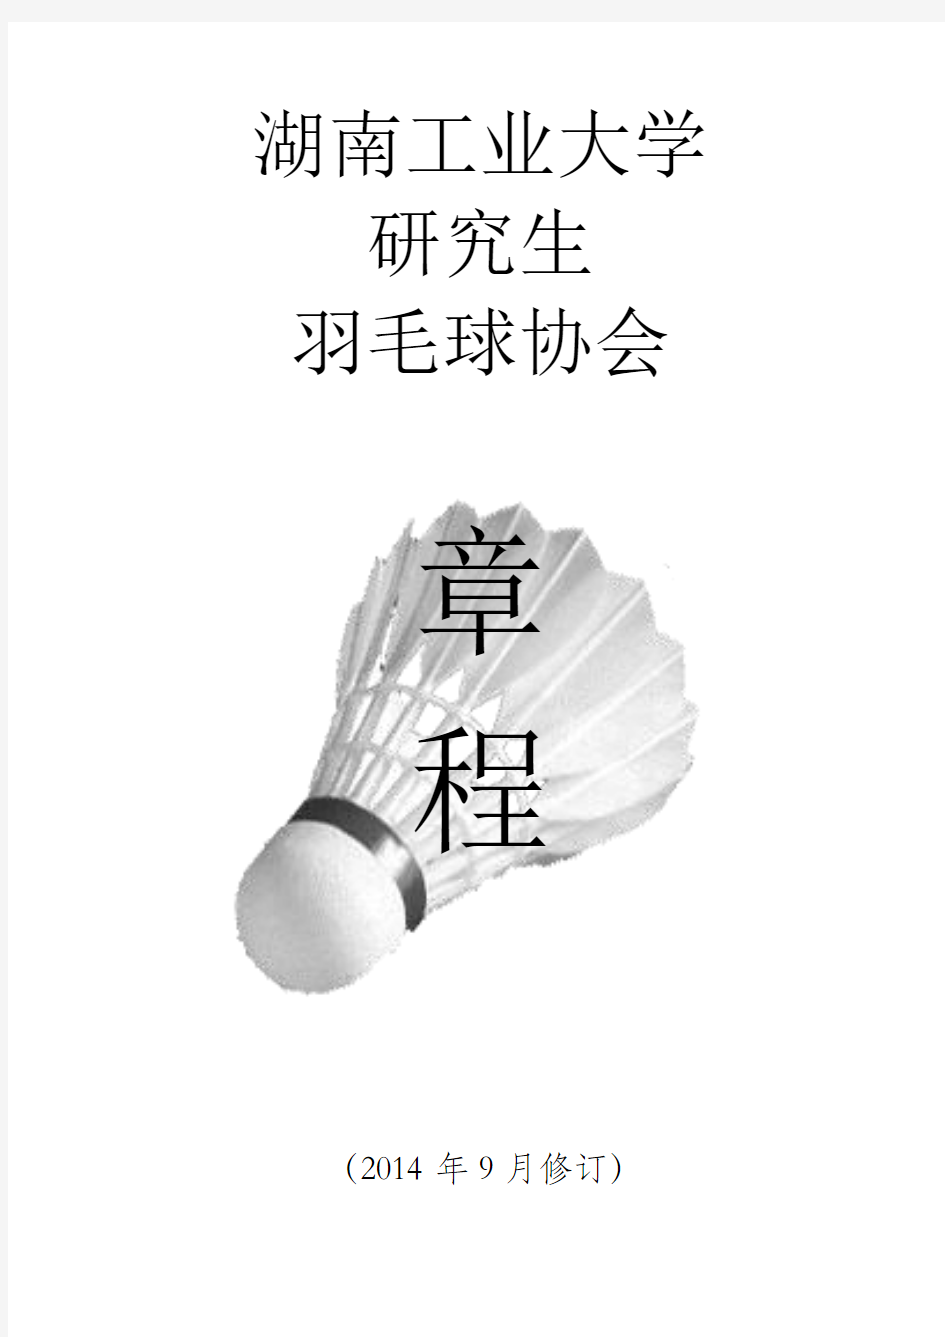 湖南工业大学羽毛球协会章程(2014.09)